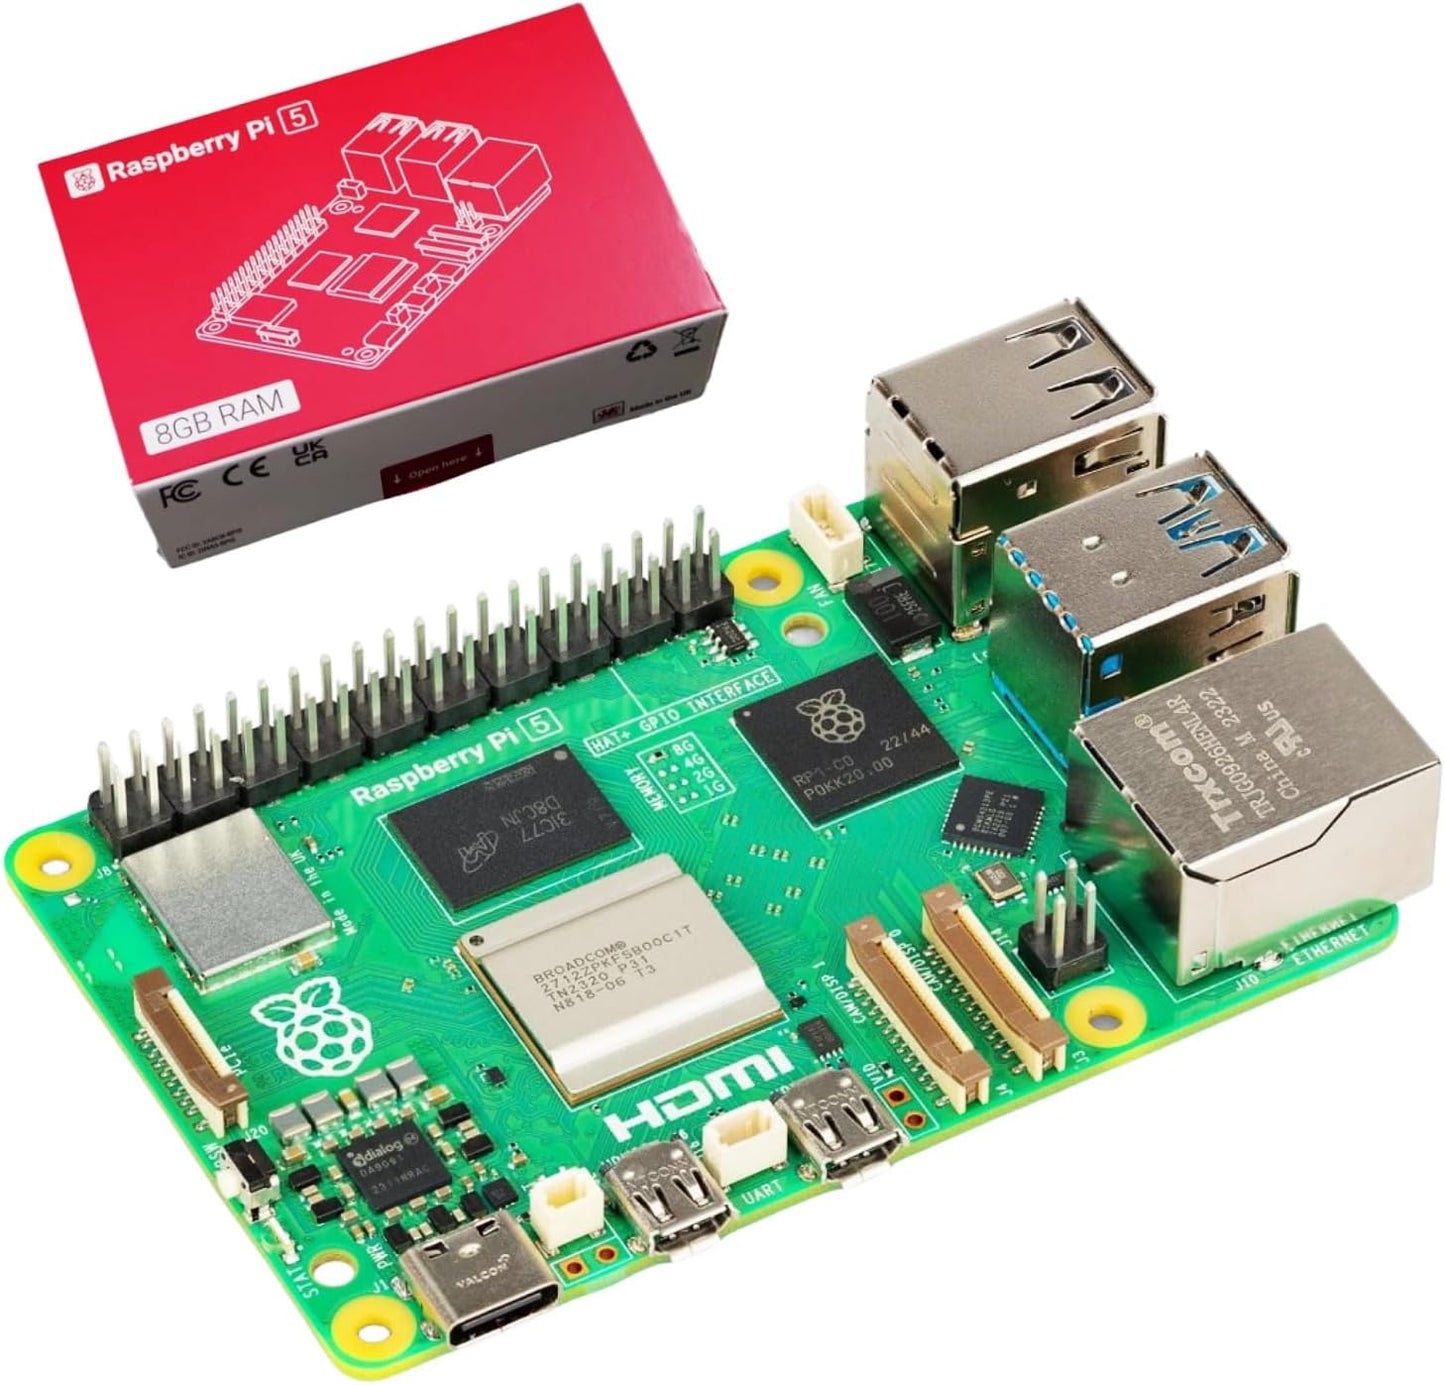 Raspberry Pi 5 8gb 技適マーク付き ラズベリーパイ5 8gb Development Board BCM2712 Arm Cortex-A76 64-bit quad-core 2.4GHz RTC WiFi/Bluetooth 5.0 SDR104対応 ラズベリーパイ5 （8GB RAM）コンピューター 技適対応品 (raspberry Pi 5 8GB)